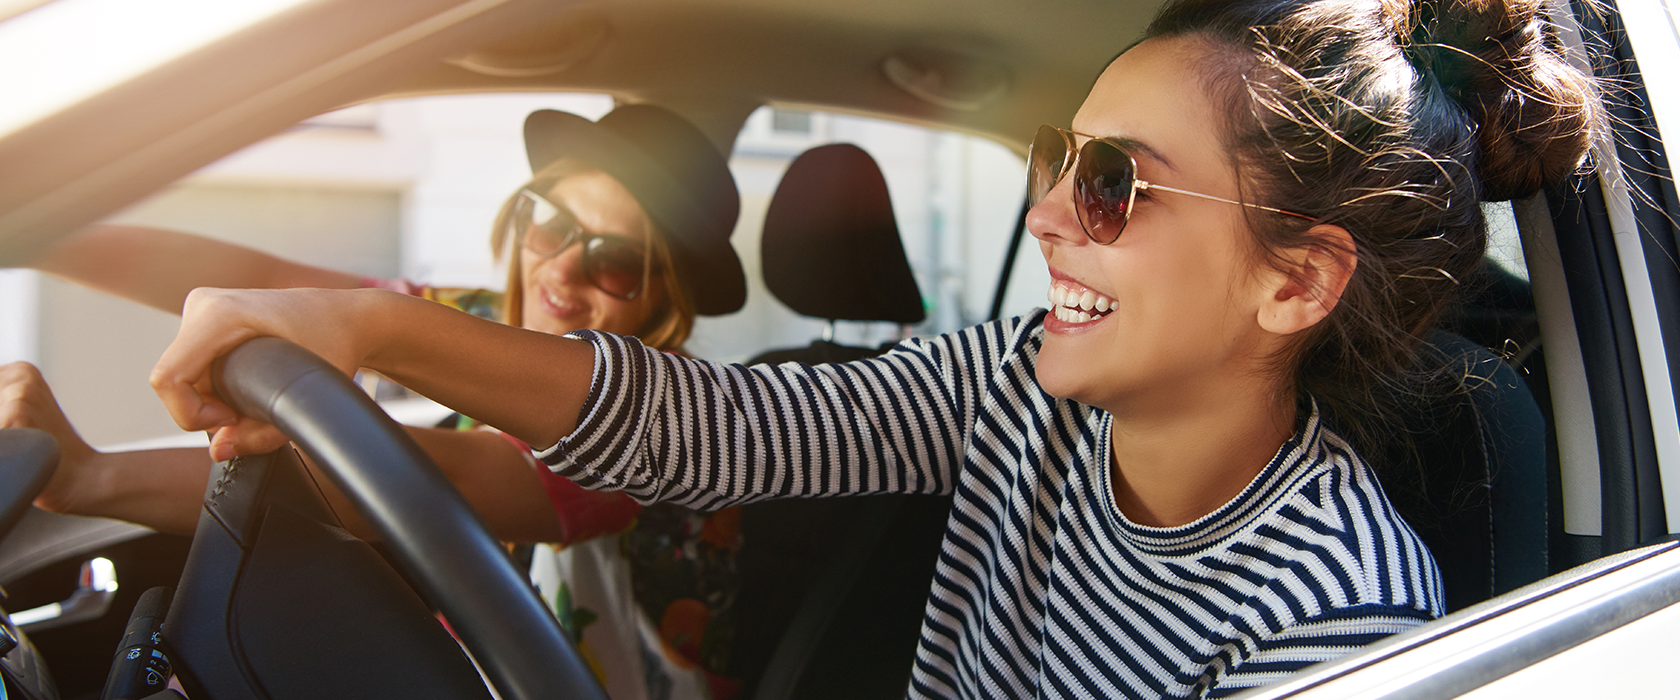 Zwei junge Frauen mit Sonnenbrillen fahren sorglos in einem Auto. Die Fenster sind offen und die Sonne scheint.